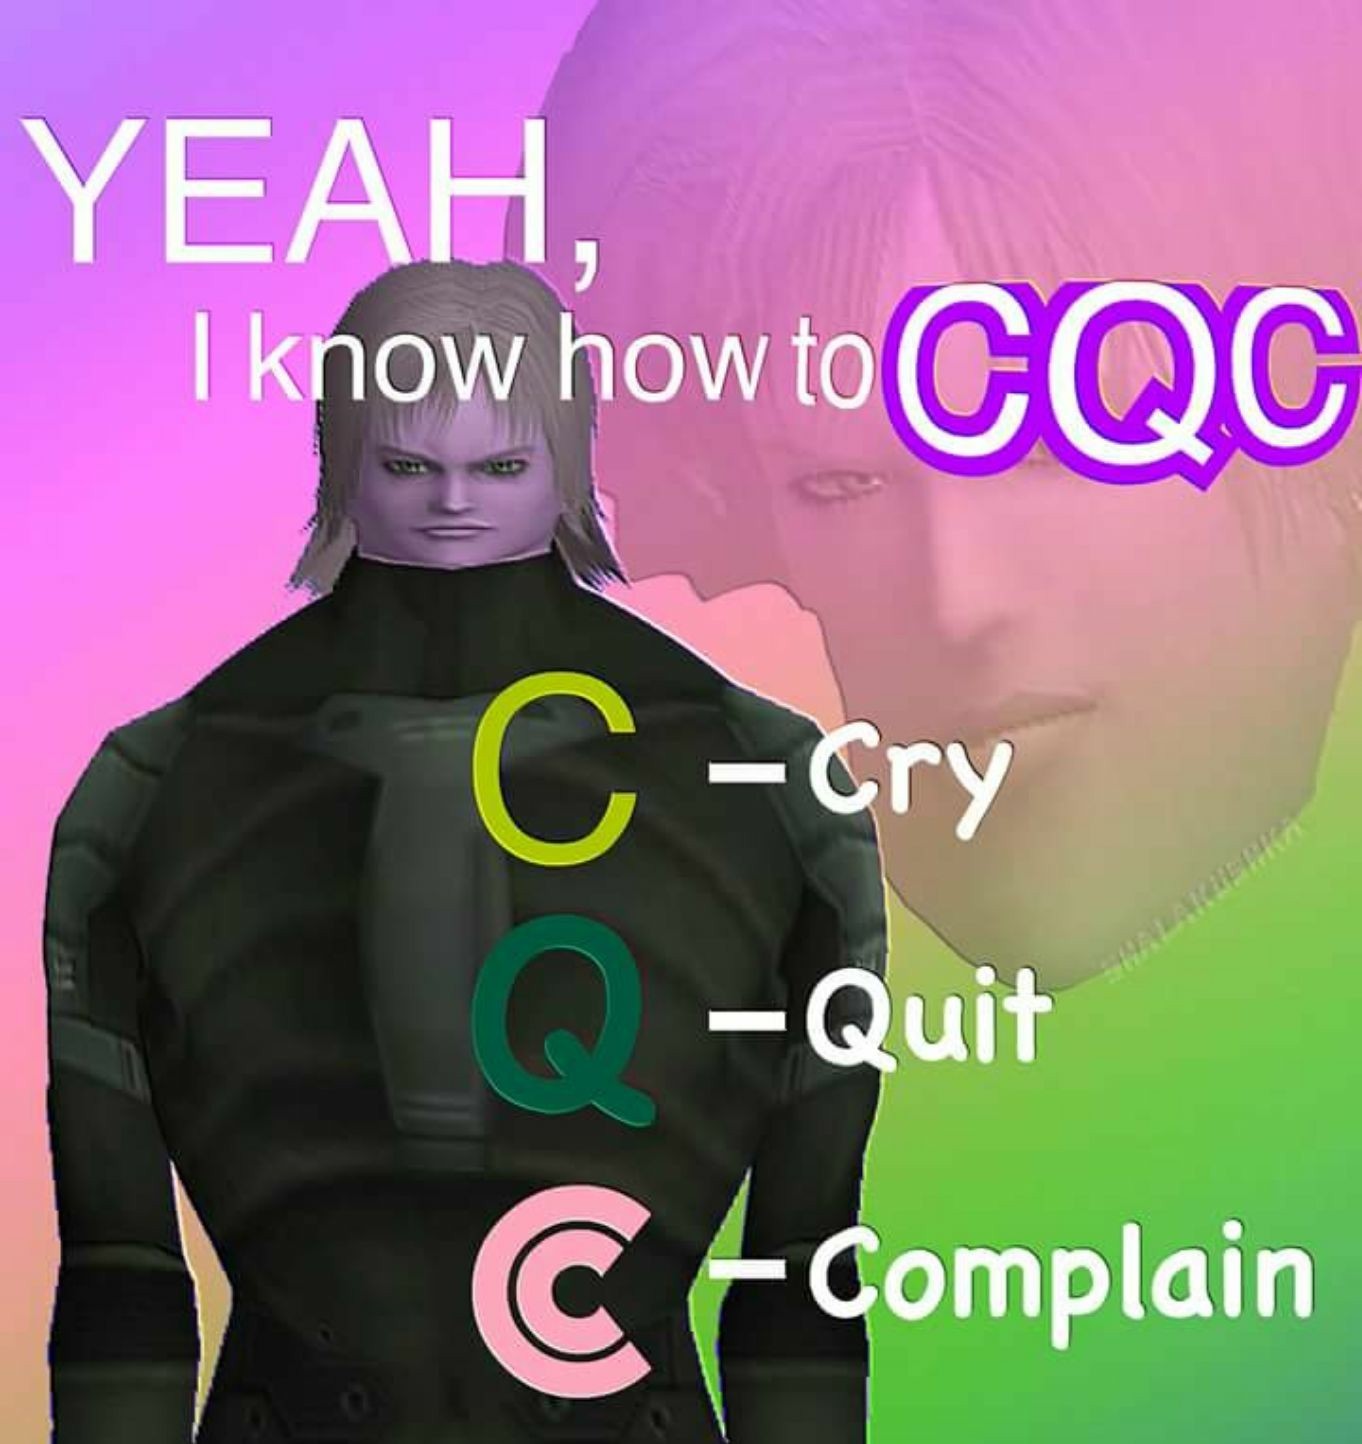 Remember the basics of cqc - meme